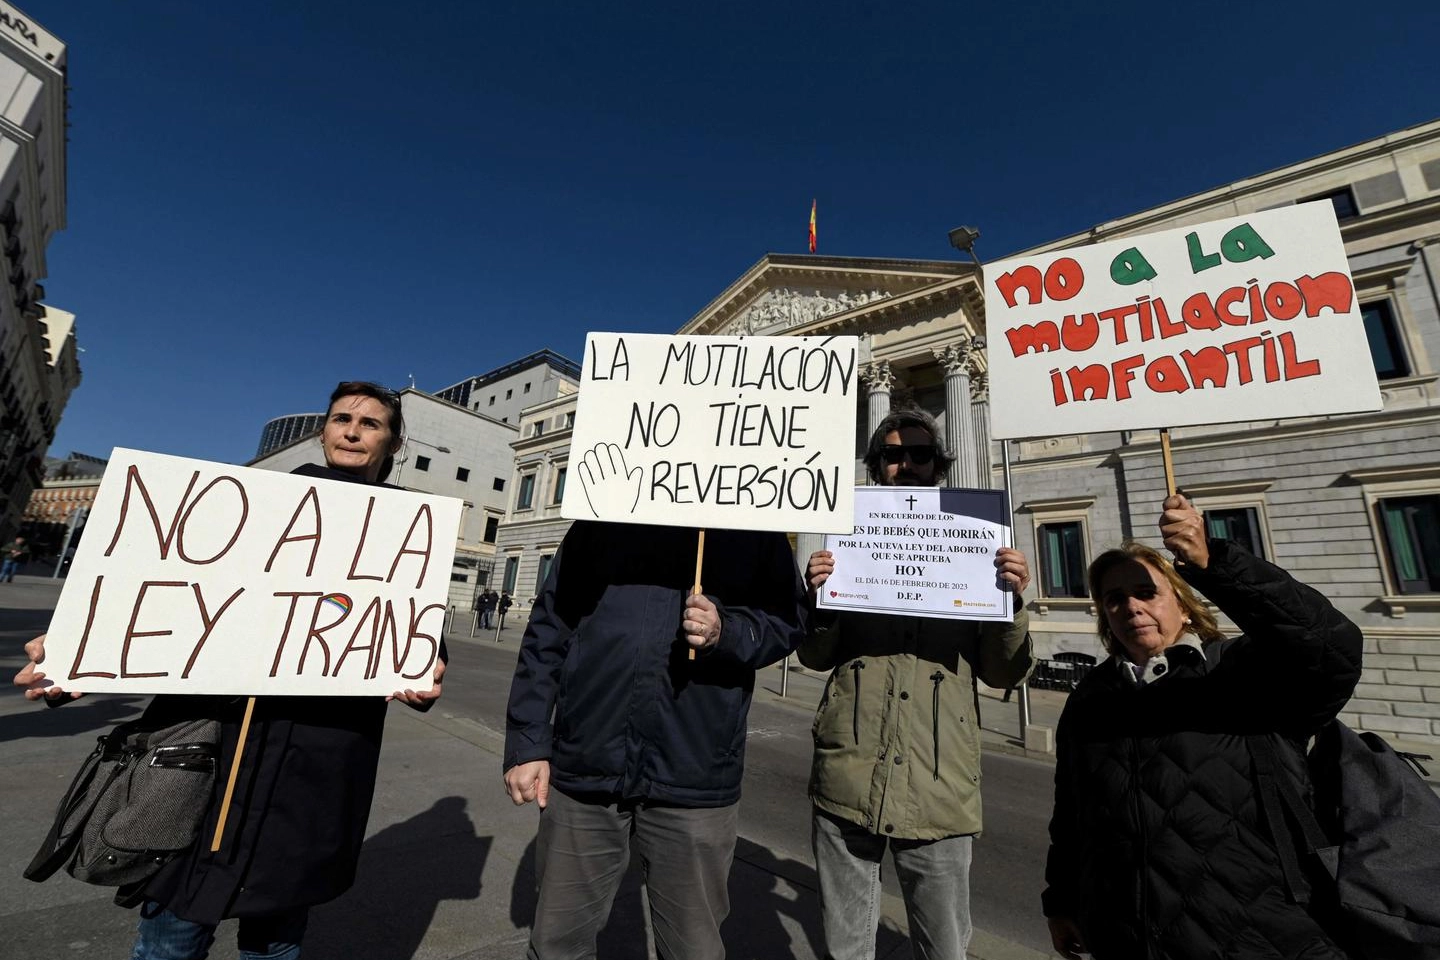 Proteste contro la 'legge trans' davanti al Congresso di Madrid (Ansa)